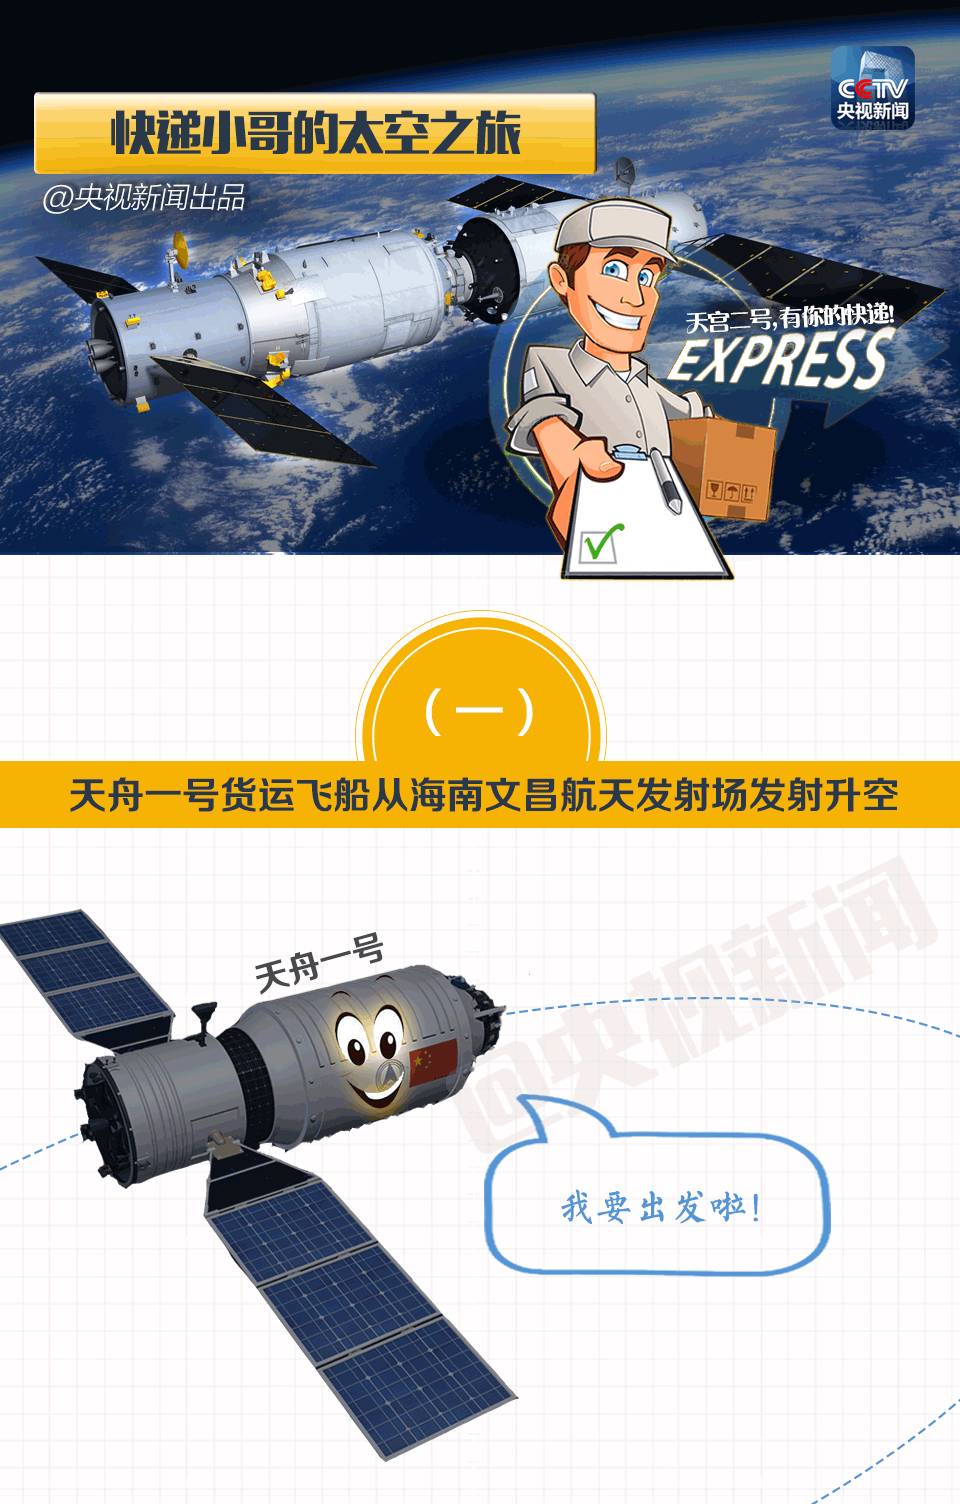 中国“快递小哥”将往太空送快递 如何又快又准？